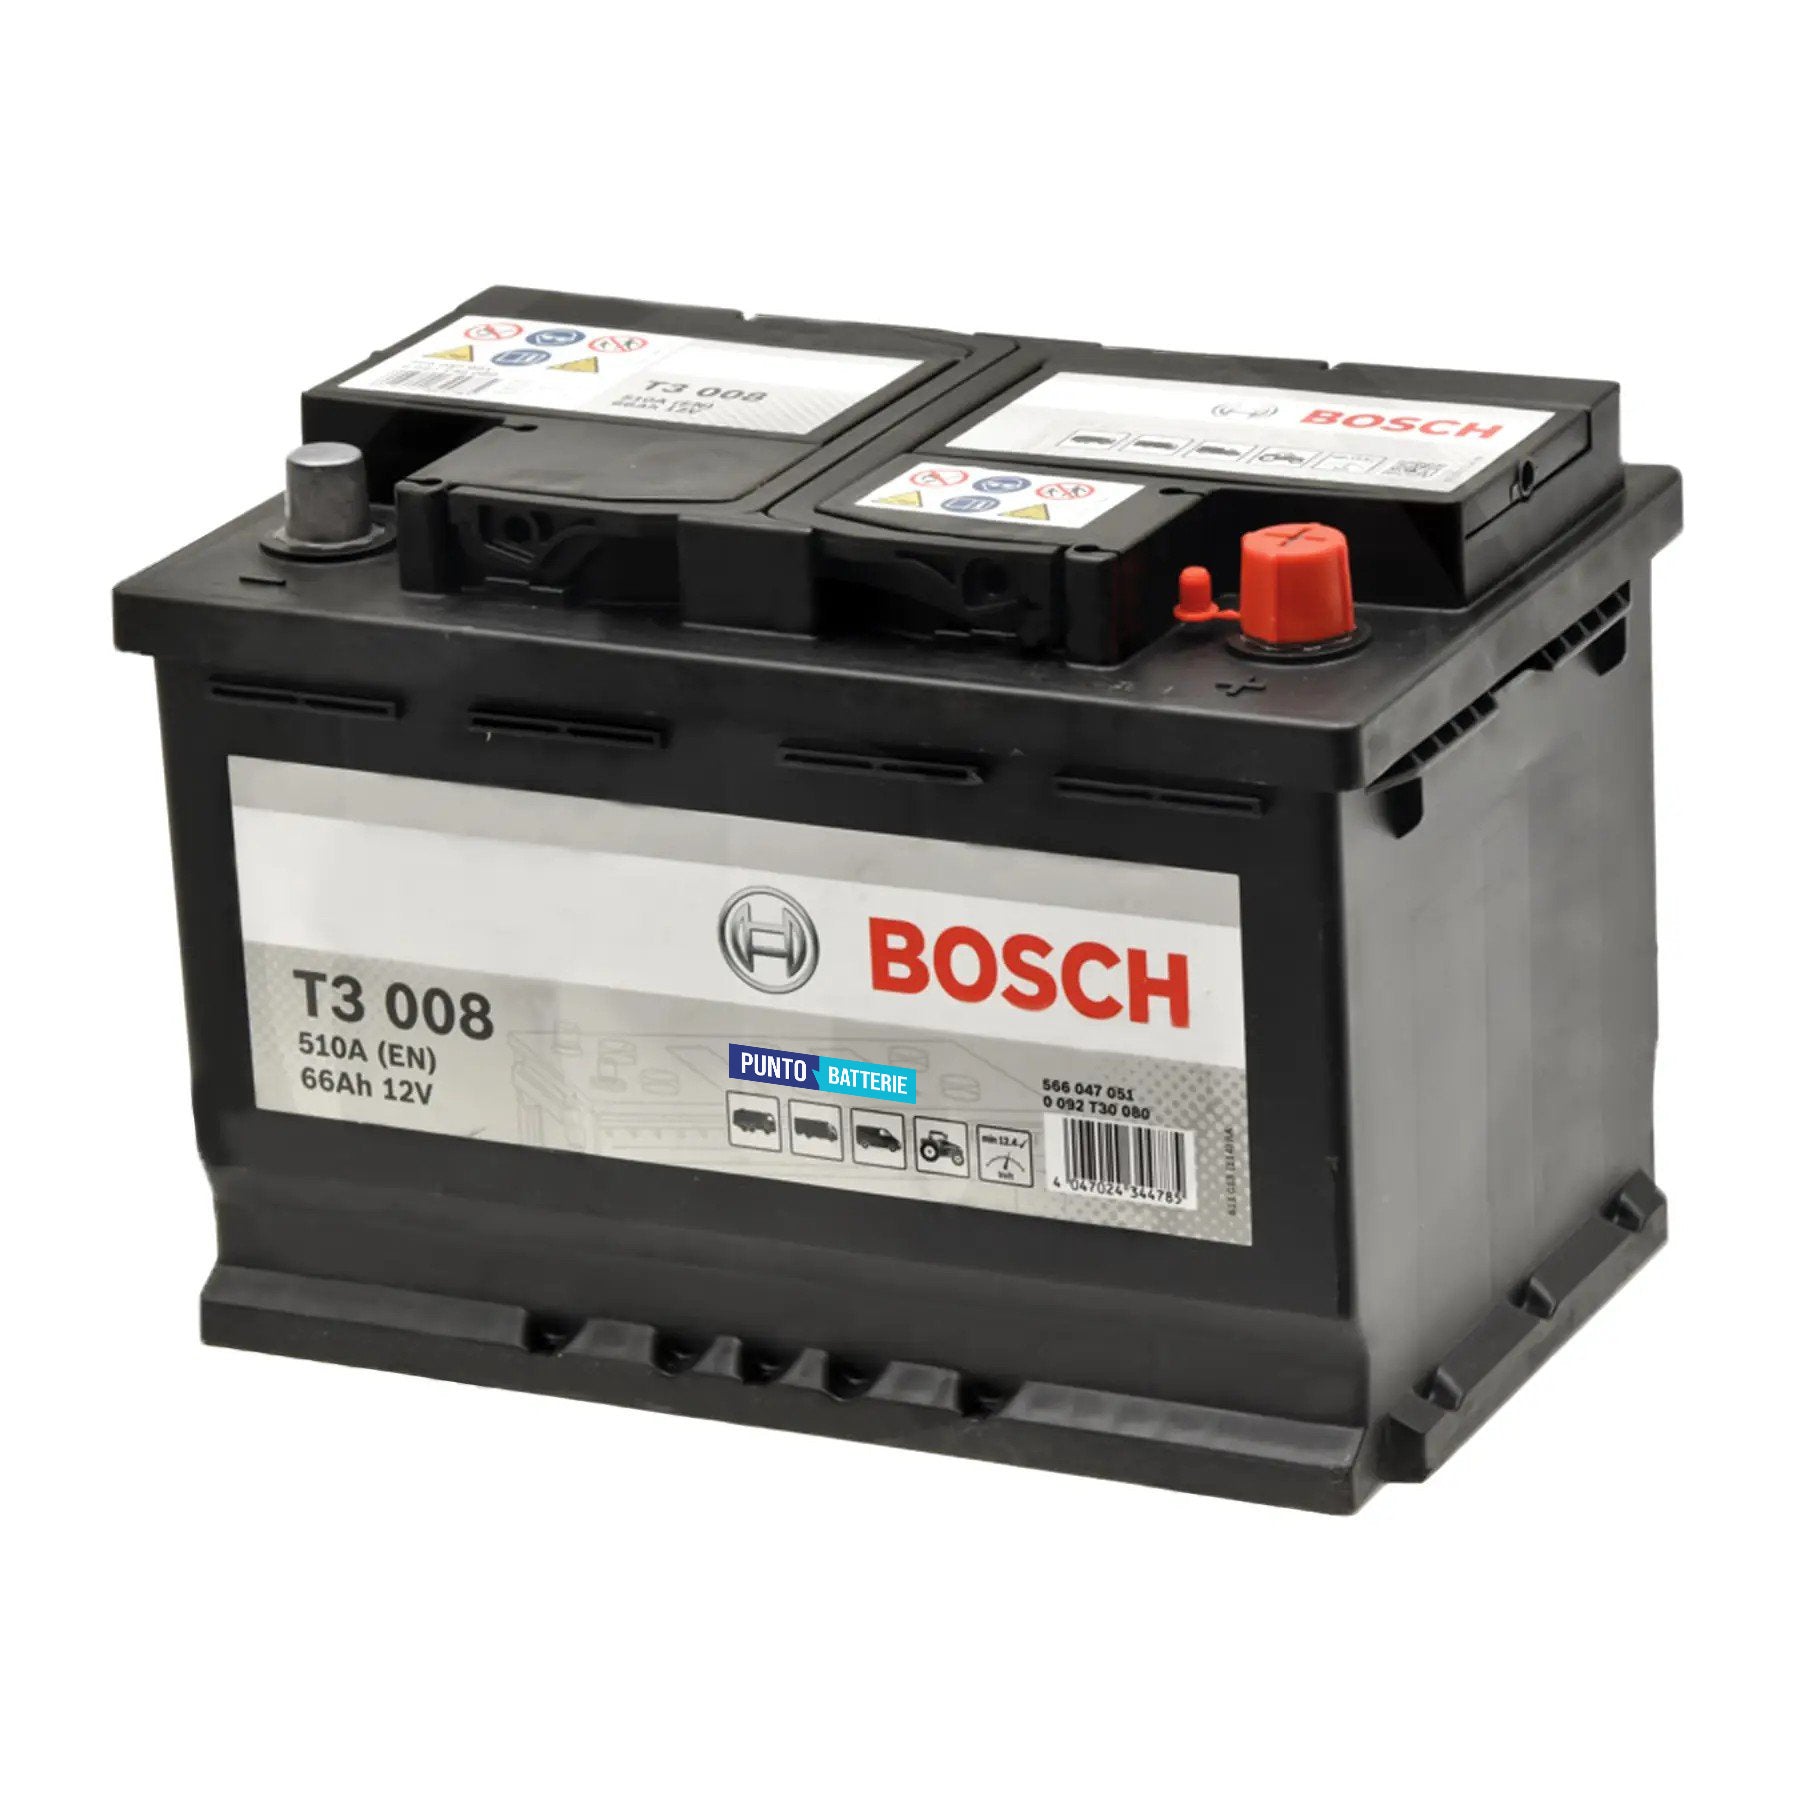 Batteria originale Bosch T3 T3008, dimensioni 278 x 175 x 190, polo positivo a destra, 12 volt, 66 amperora, 510 ampere. Batteria per camion e veicoli pesanti.